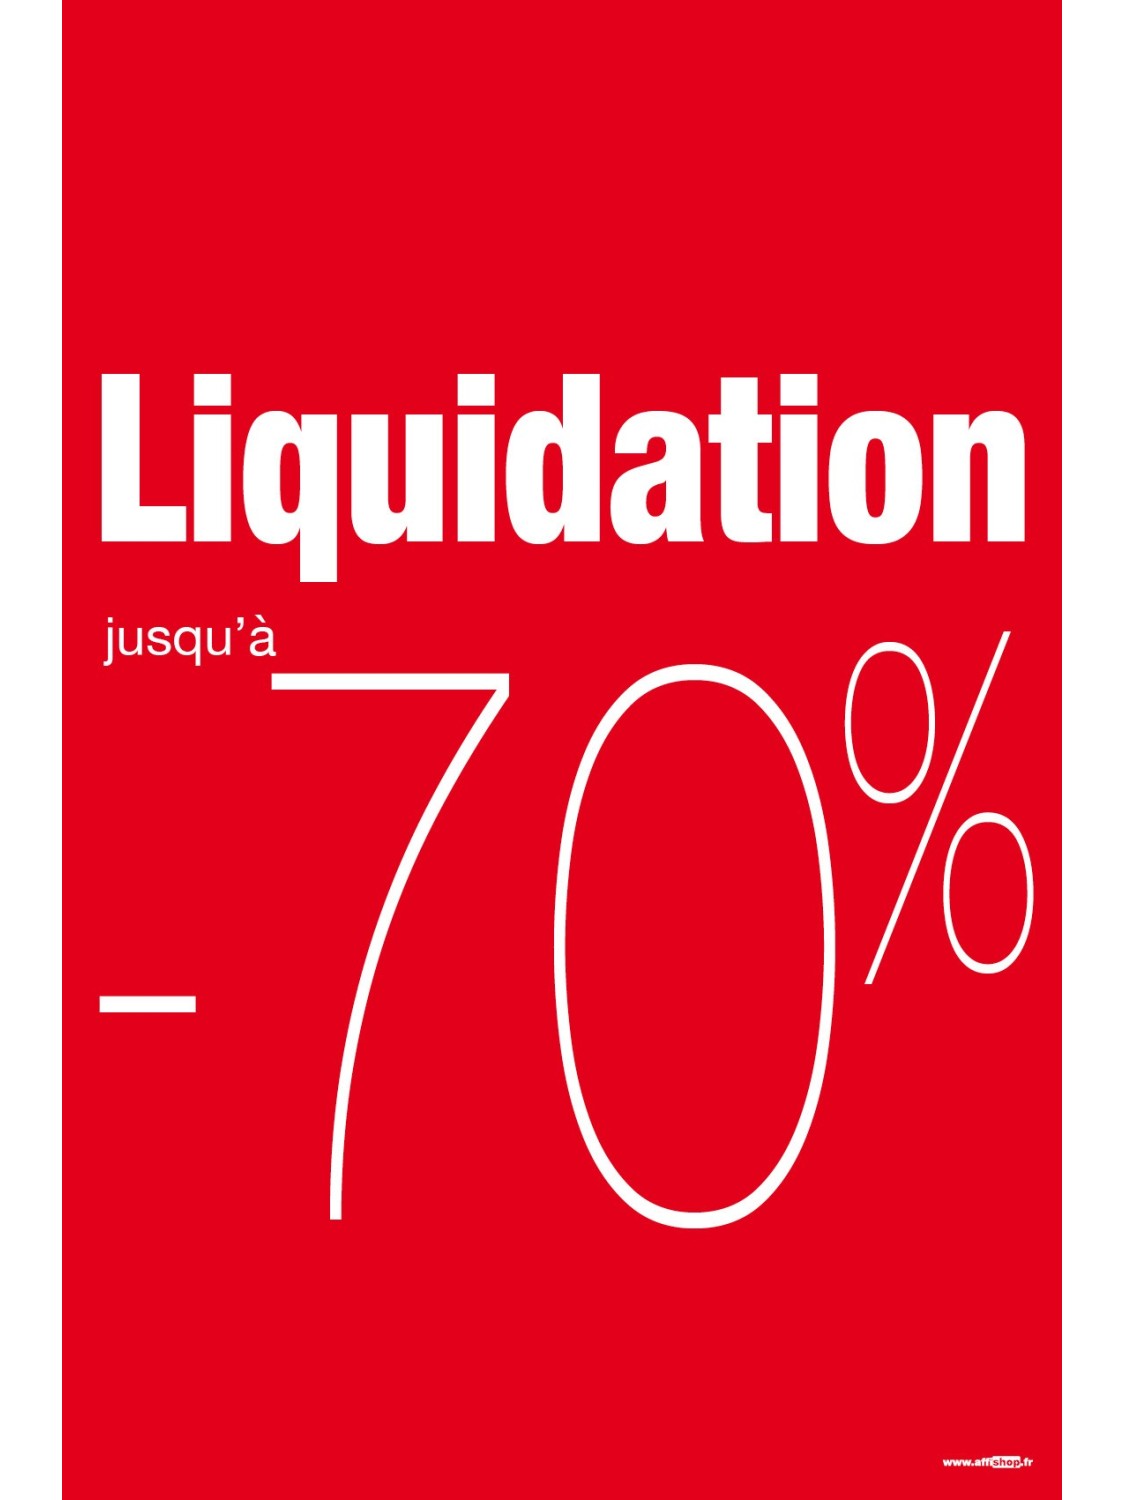 Affiche liquidation -70%